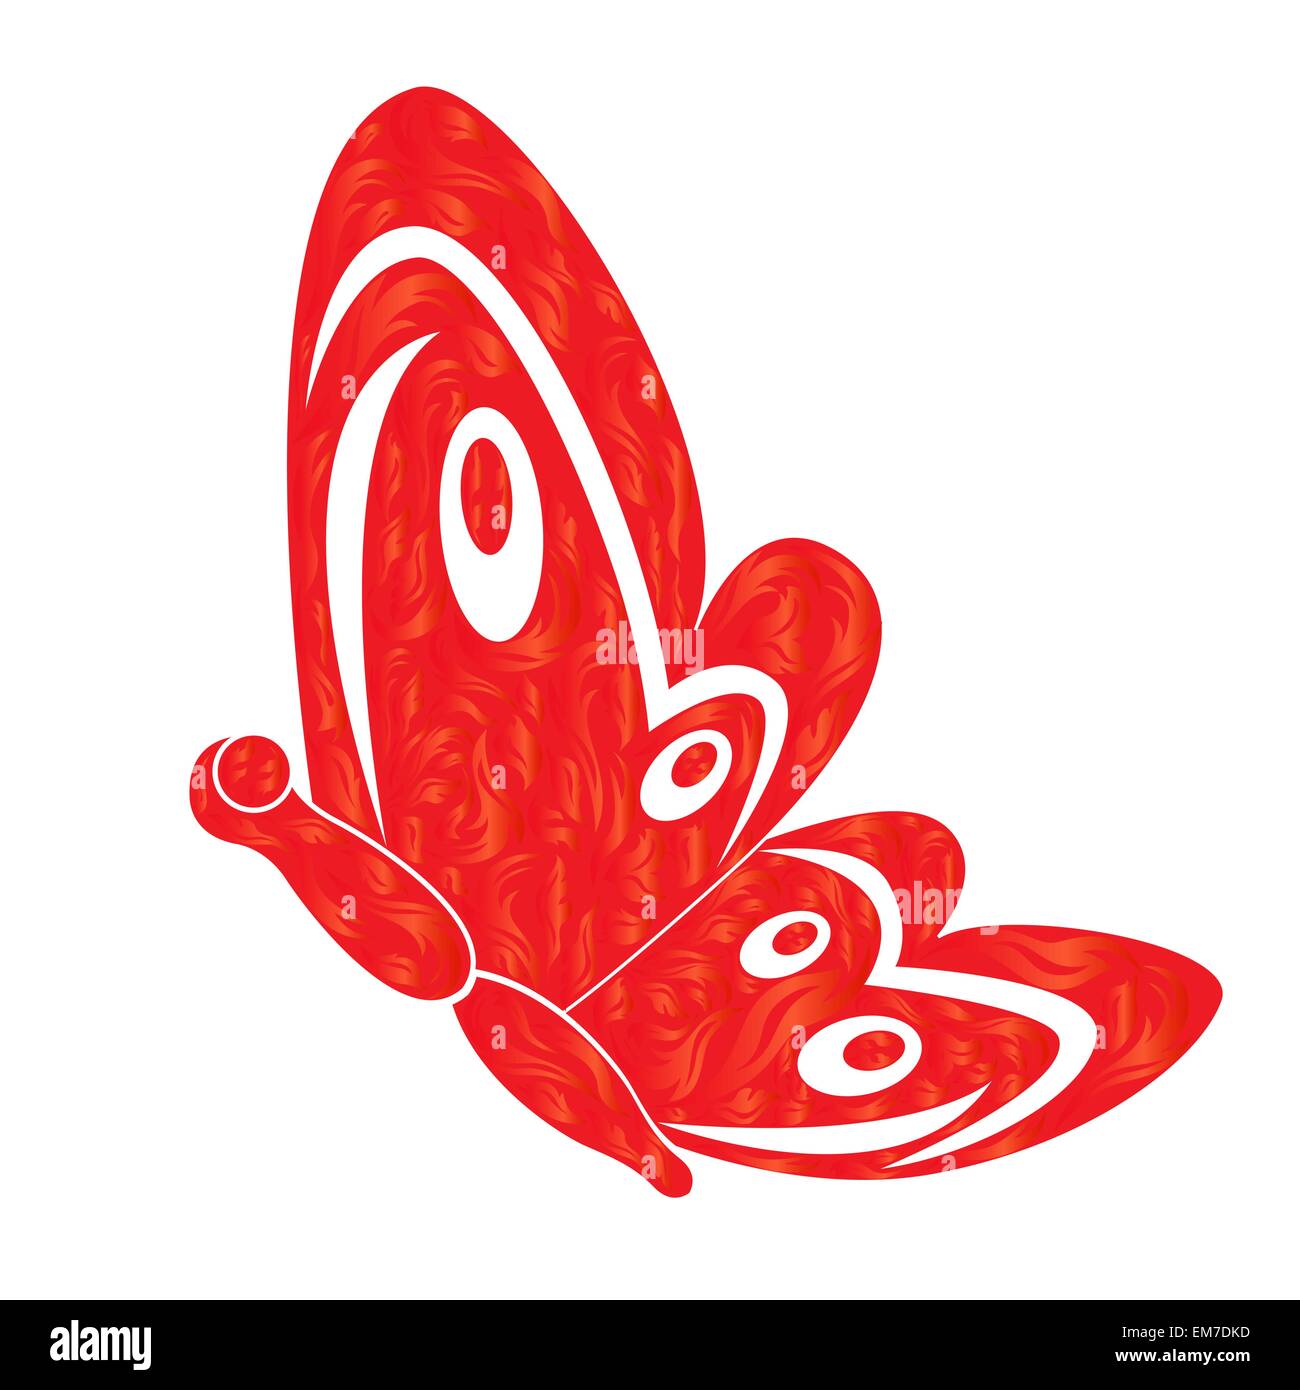 Roten feurigen Schmetterling in weiß Stock Vektor